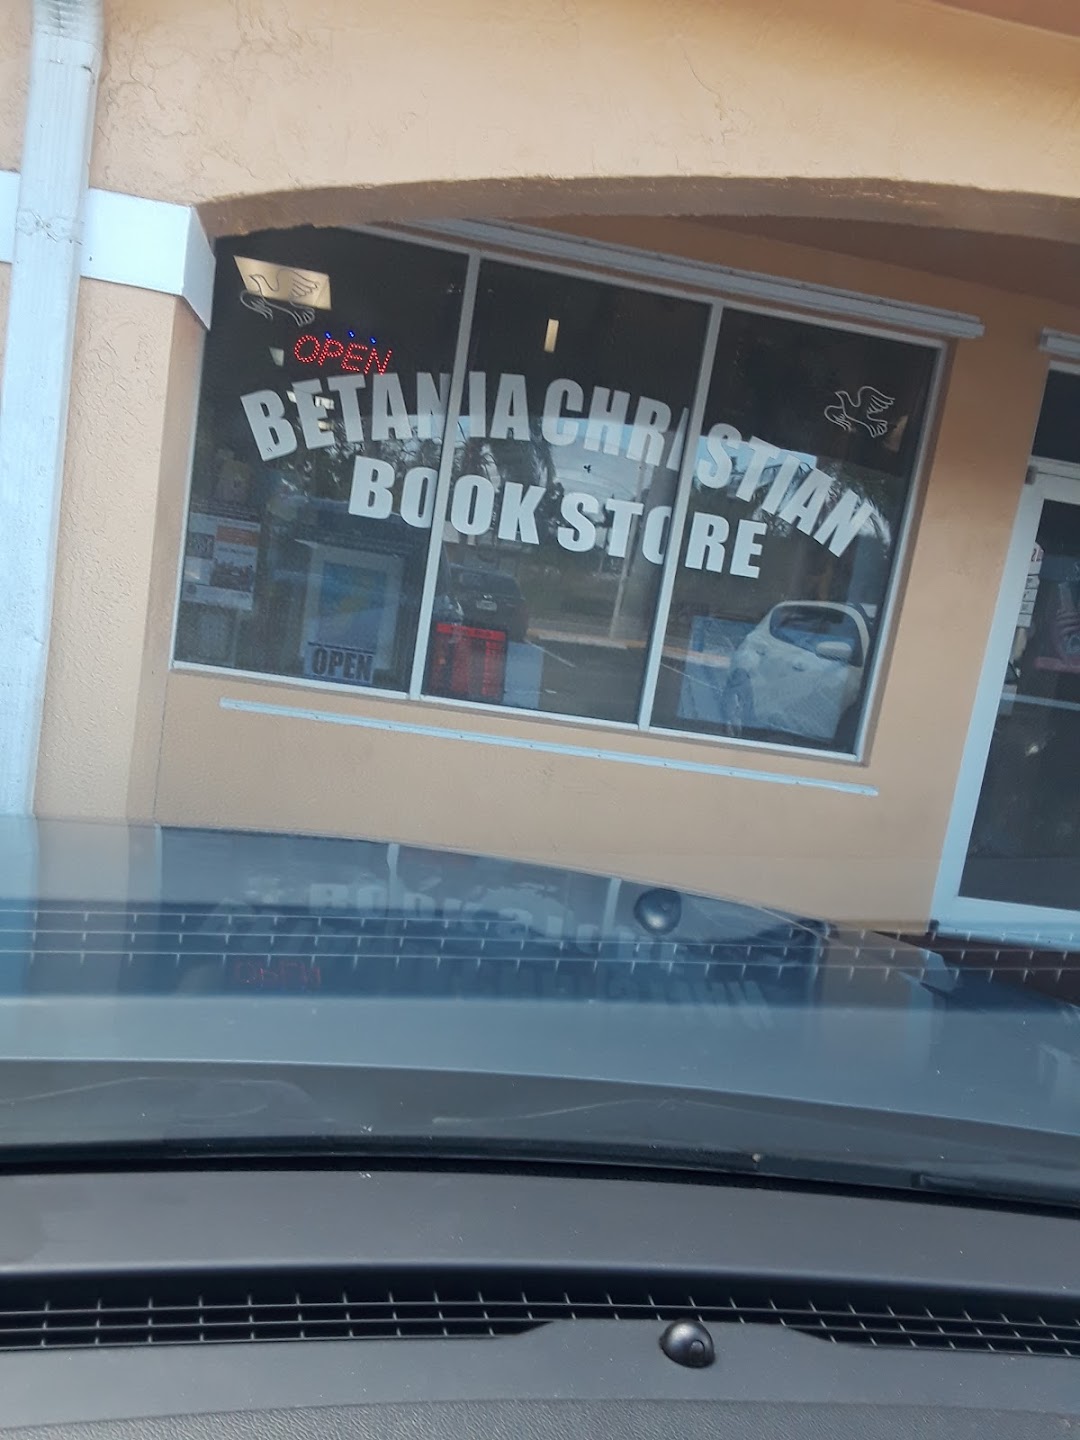 Bible Bookstore/ Libreria Betania Bookstore Corp